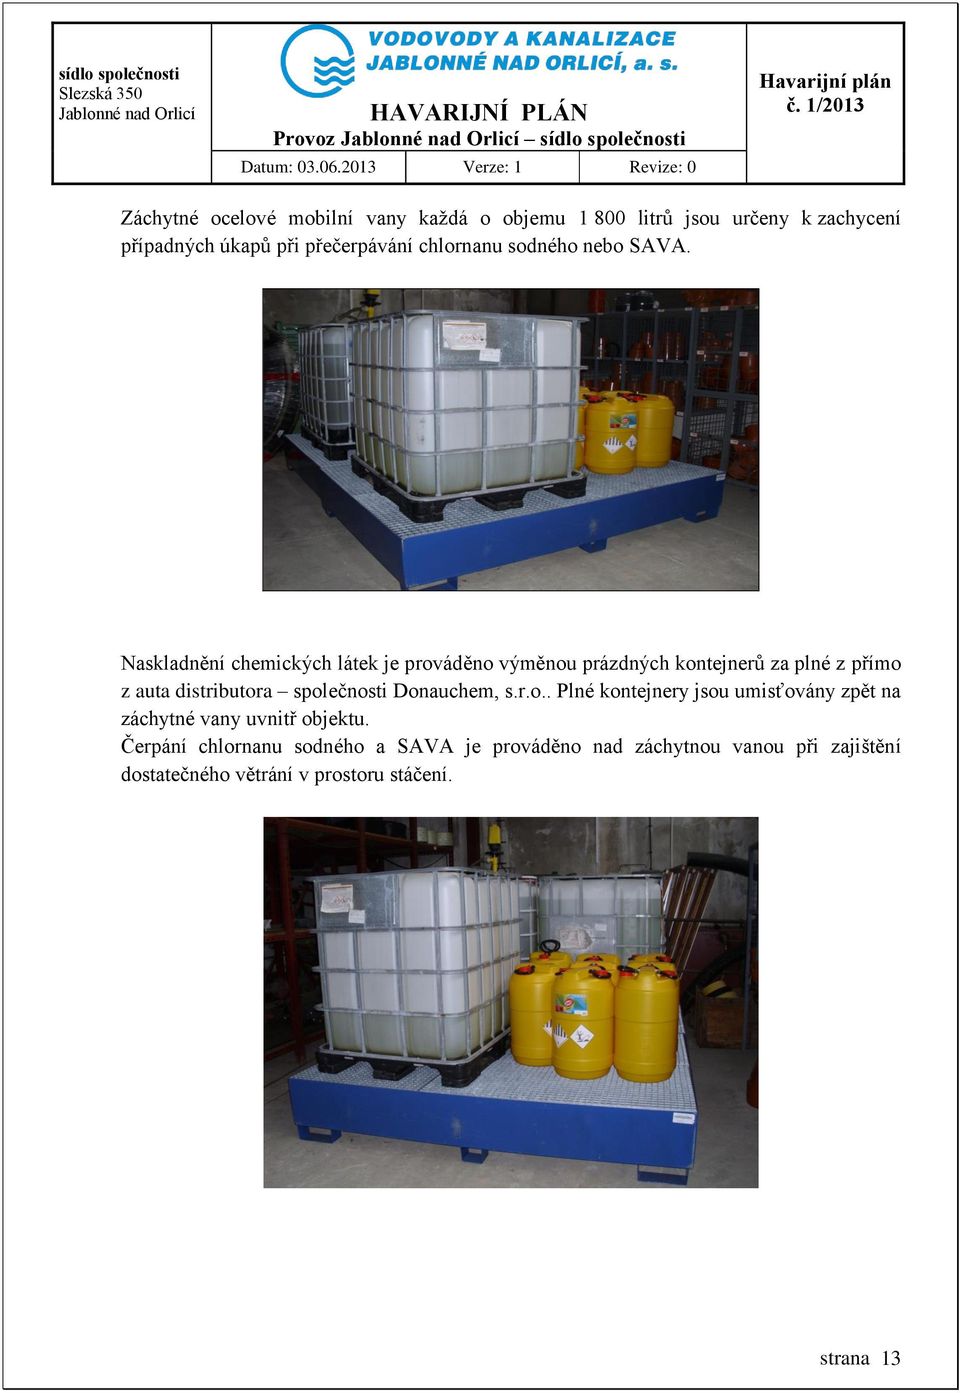 Naskladnění chemických látek je prováděno výměnou prázdných kontejnerů za plné z přímo z auta distributora společnosti